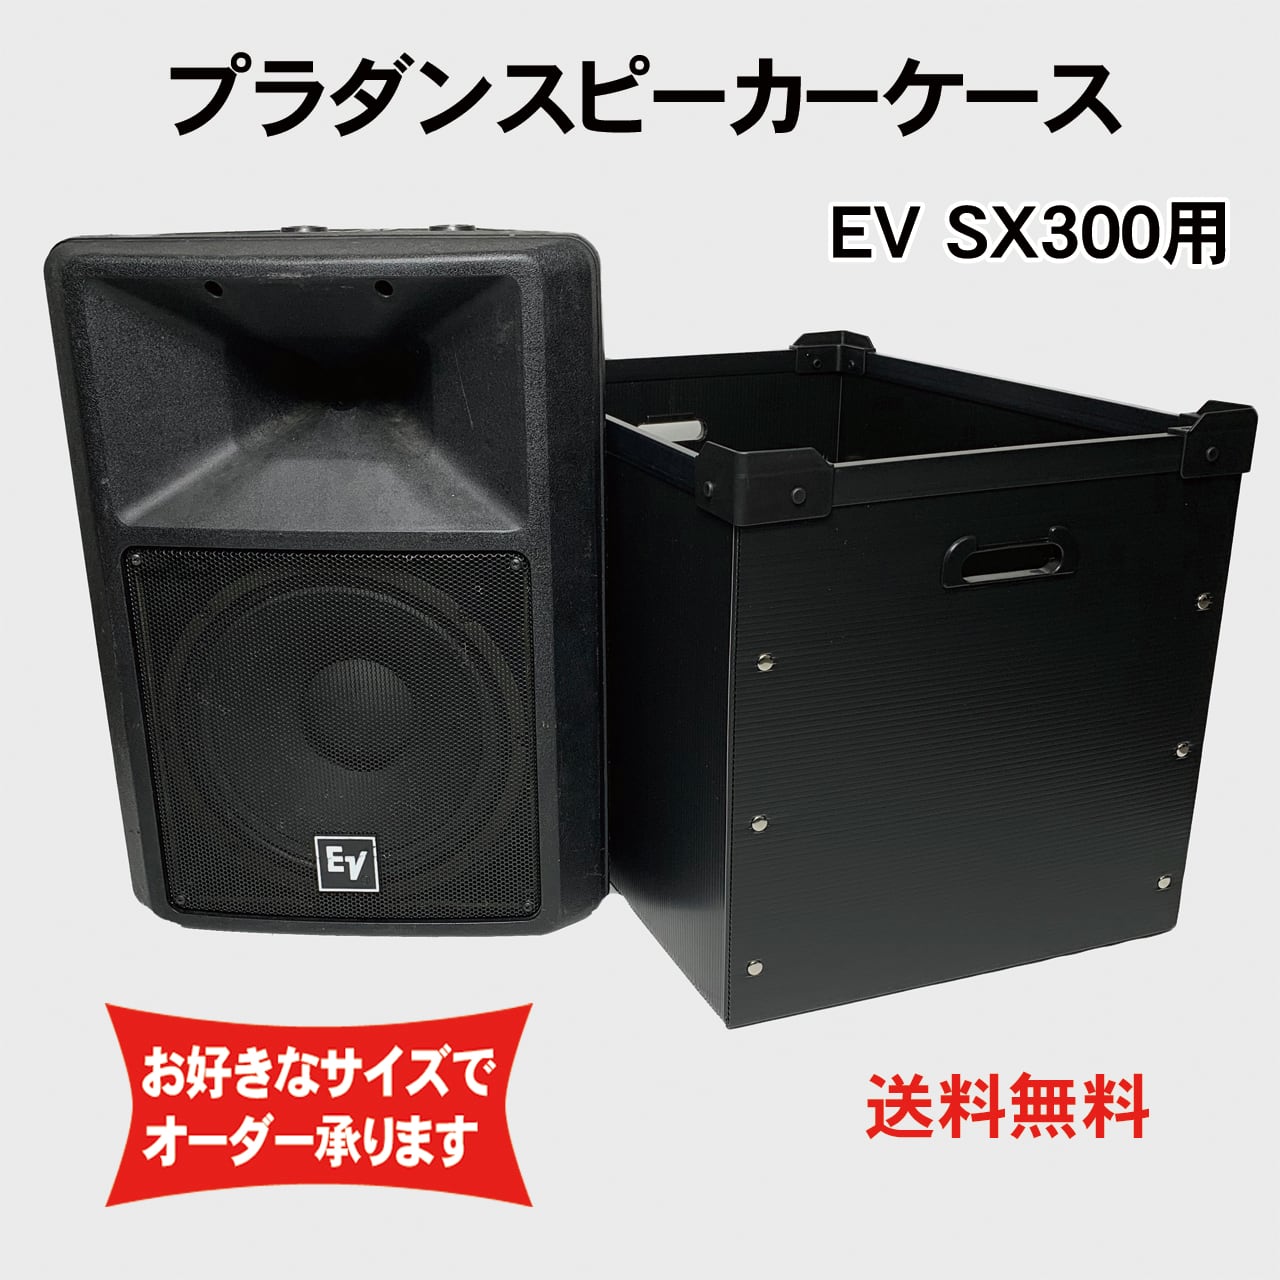 プラダンスピーカーケース Electro-voice(エレクトロボイス) EV ELX112